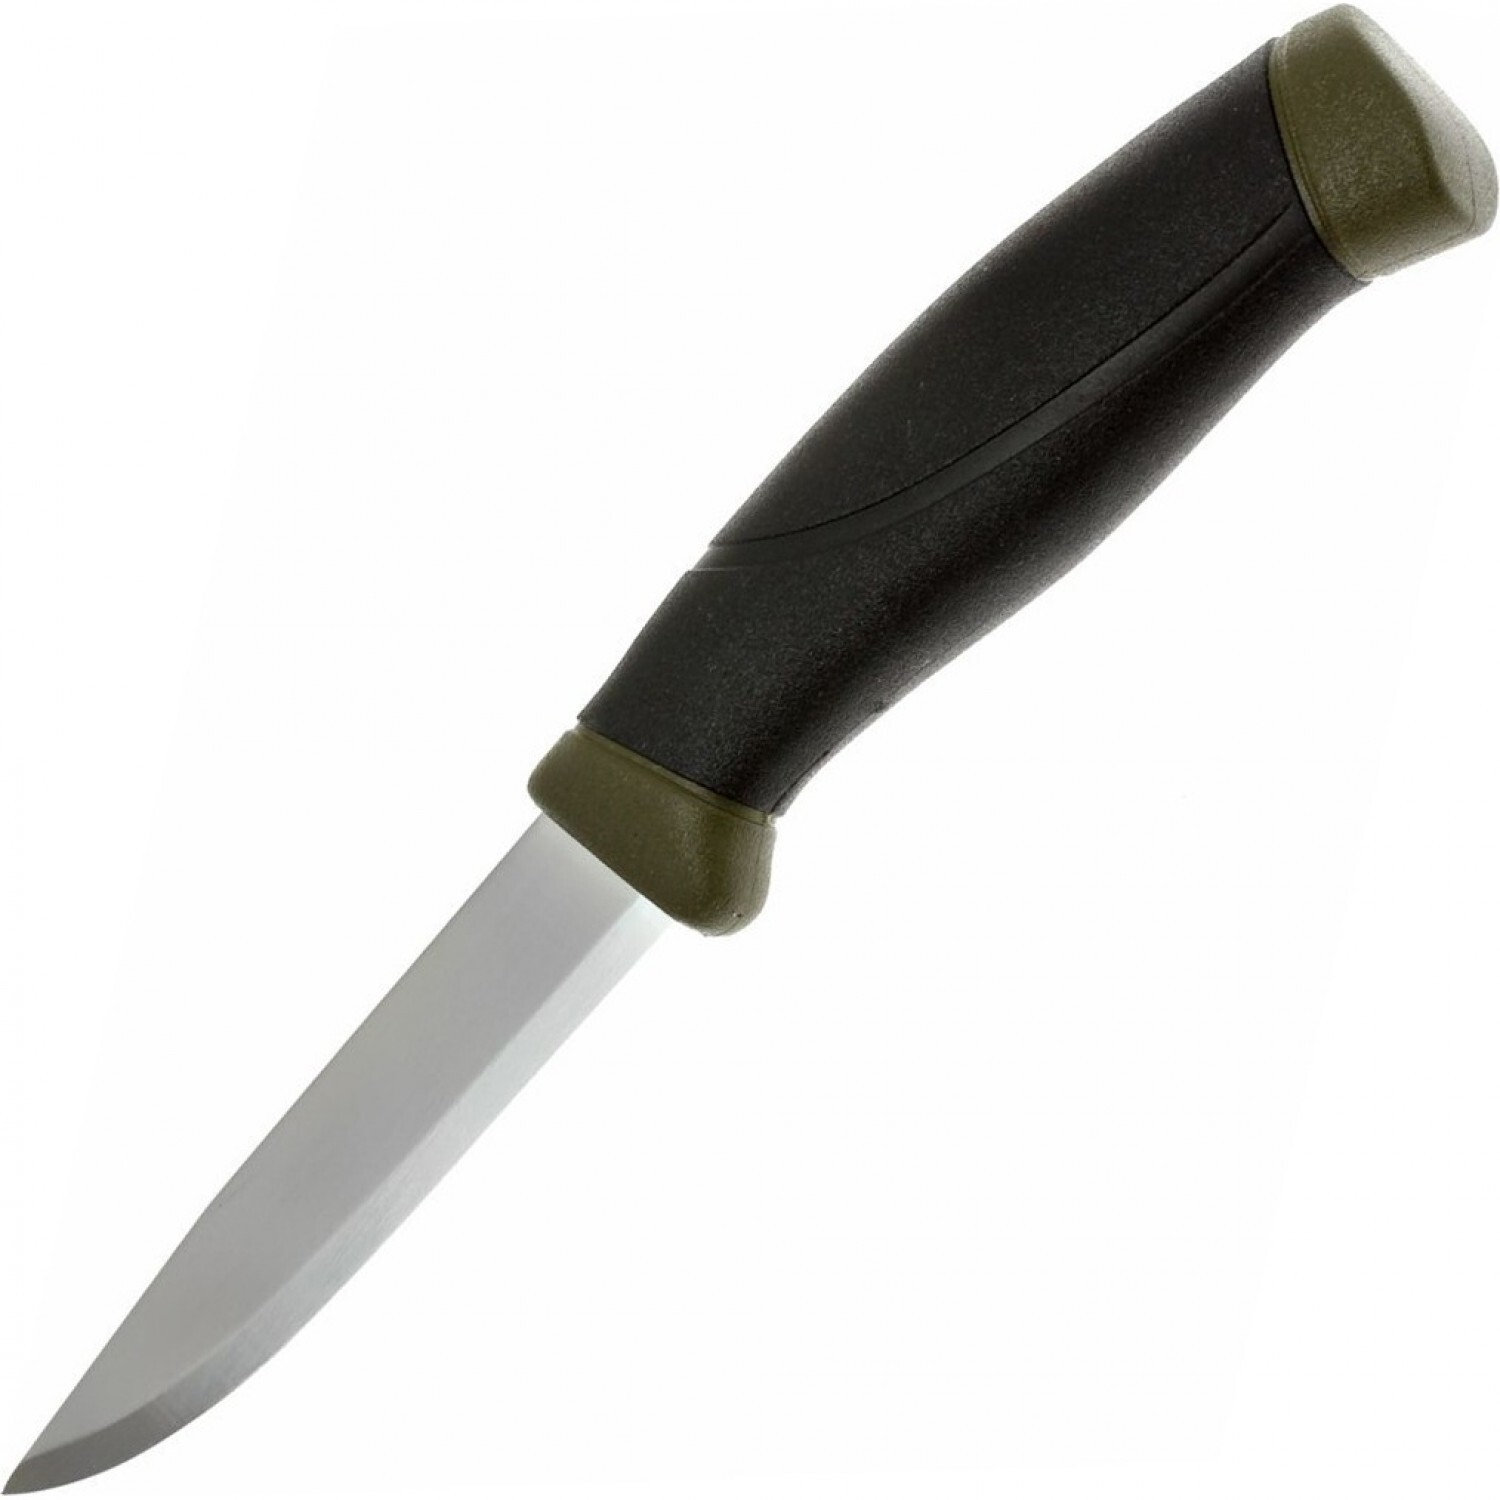 Нож с фиксированным лезвием Morakniv Companion MG (C), углеродистая сталь, рукоять резина/пластик, цвет хаки, Mora, Ножи Mora Companion